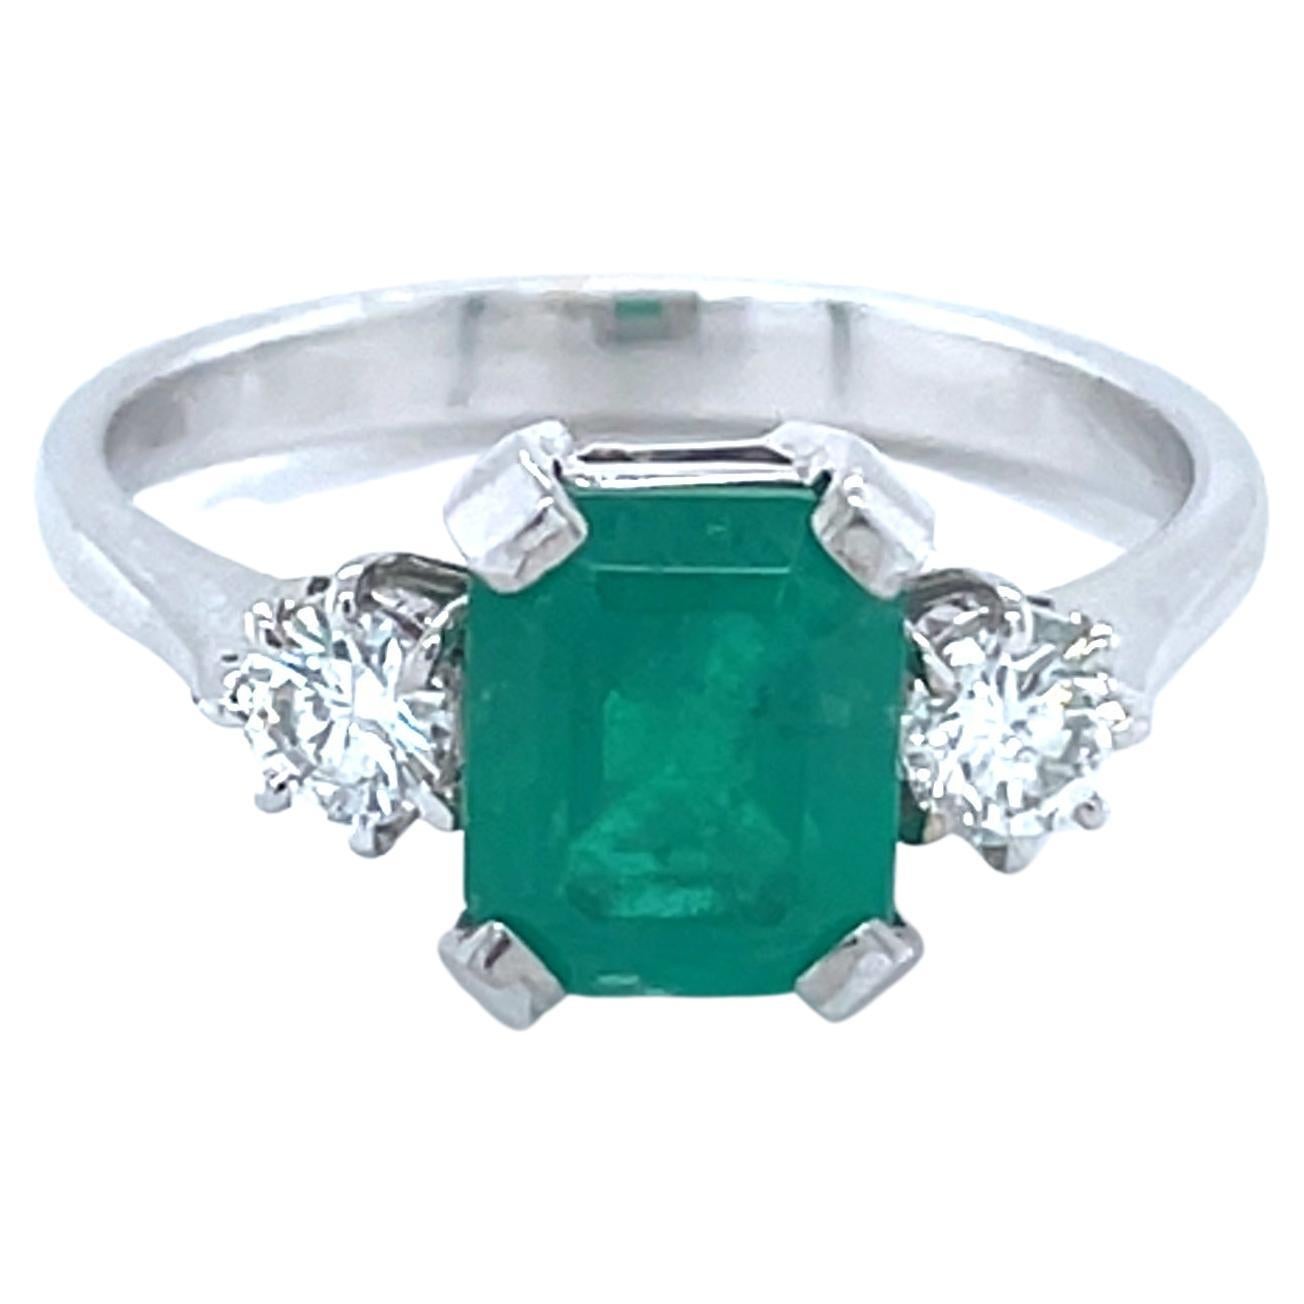 Dieser elegante Ring aus 18 Karat Weißgold ist aus unserer Timeless Collection'S. Er besteht aus einem kissenförmigen Smaragd von 1,51 Karat, verziert mit 2 farblosen runden Diamanten von insgesamt 0,32 Karat. Das Gesamtgewicht des Metalls beträgt